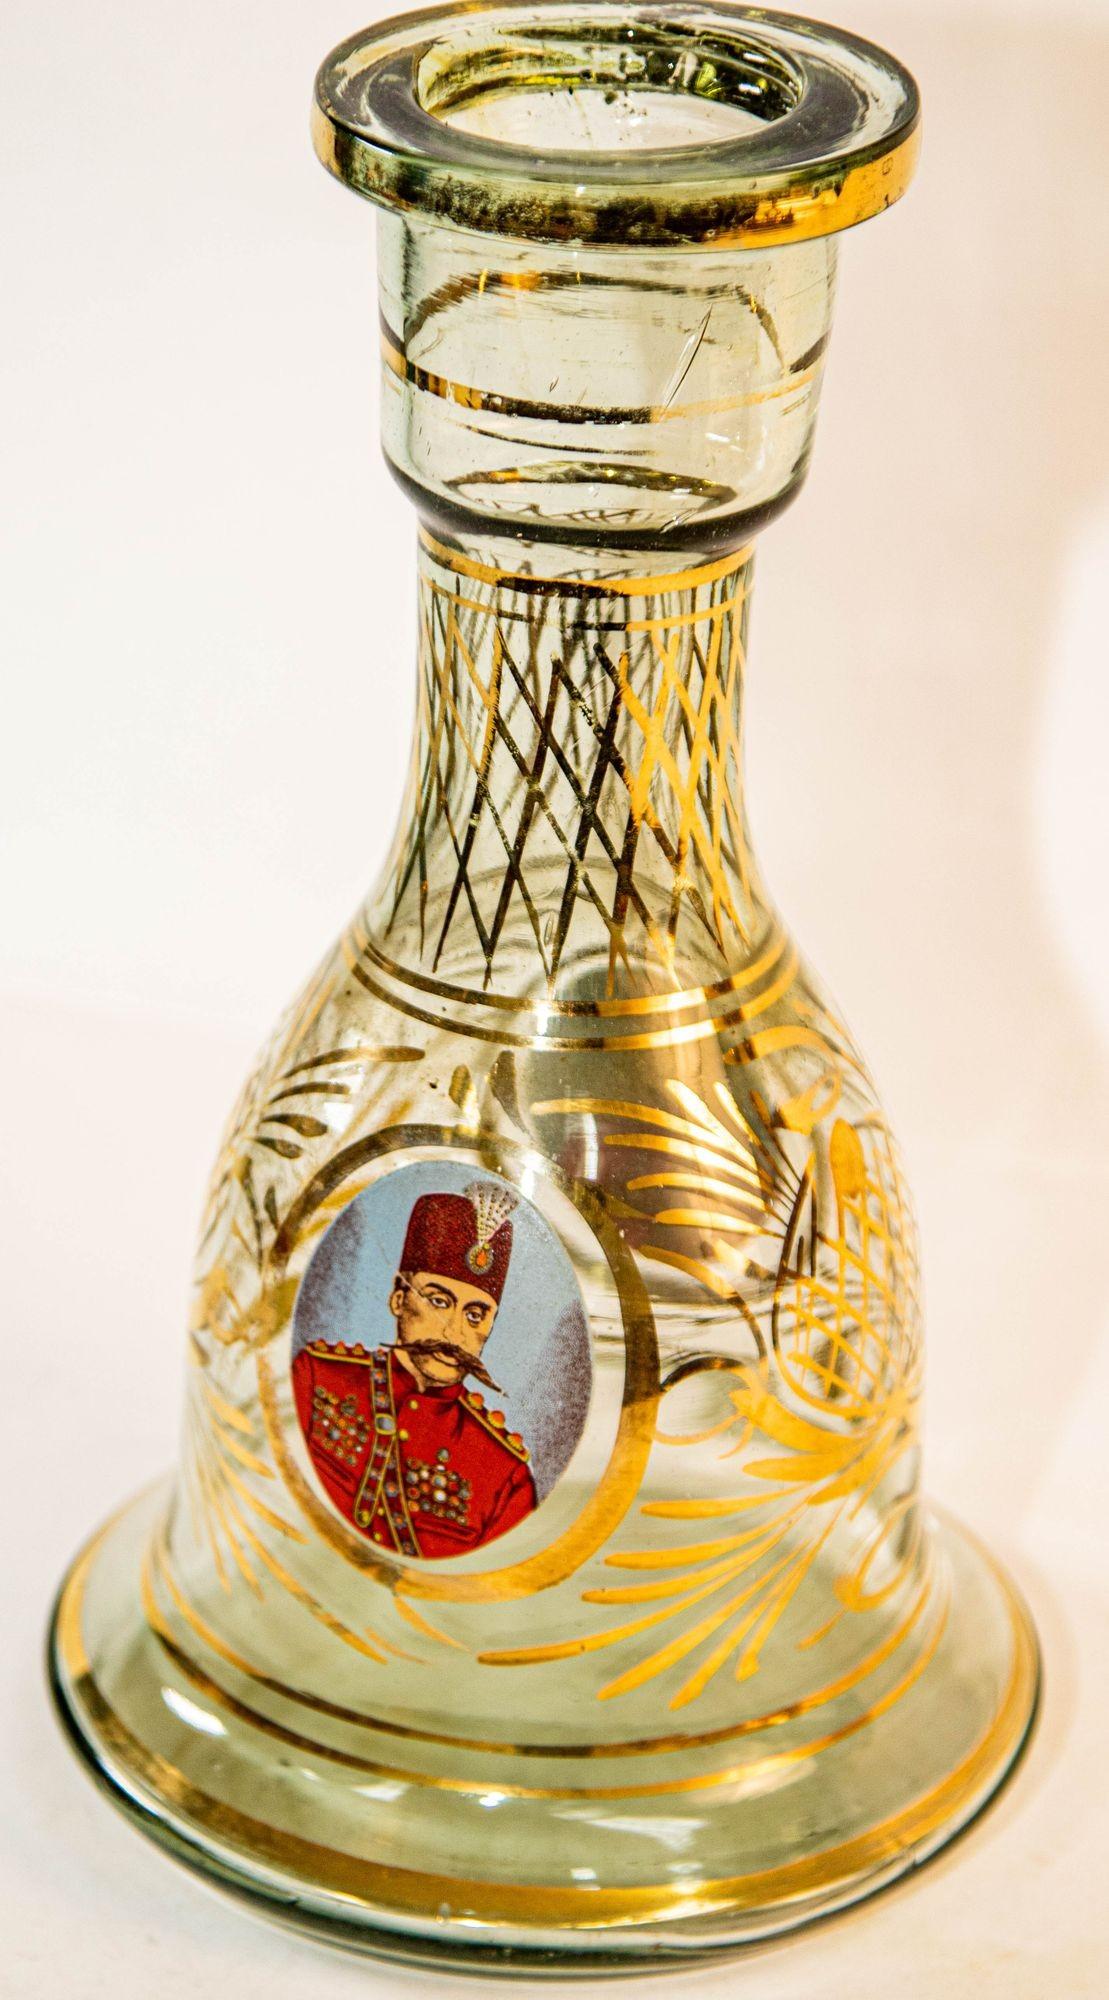 Vintage türkischen emaillierten böhmischen Glas Wasserpfeife Basis Vase.
Klar und Gold emailliert Bohemian Glas Wasserpfeife Basis, oder Blumenvase.
Boden aus böhmischem Glas mit emailliertem Überzug in Gold, Rot und Blau mit zusätzlicher